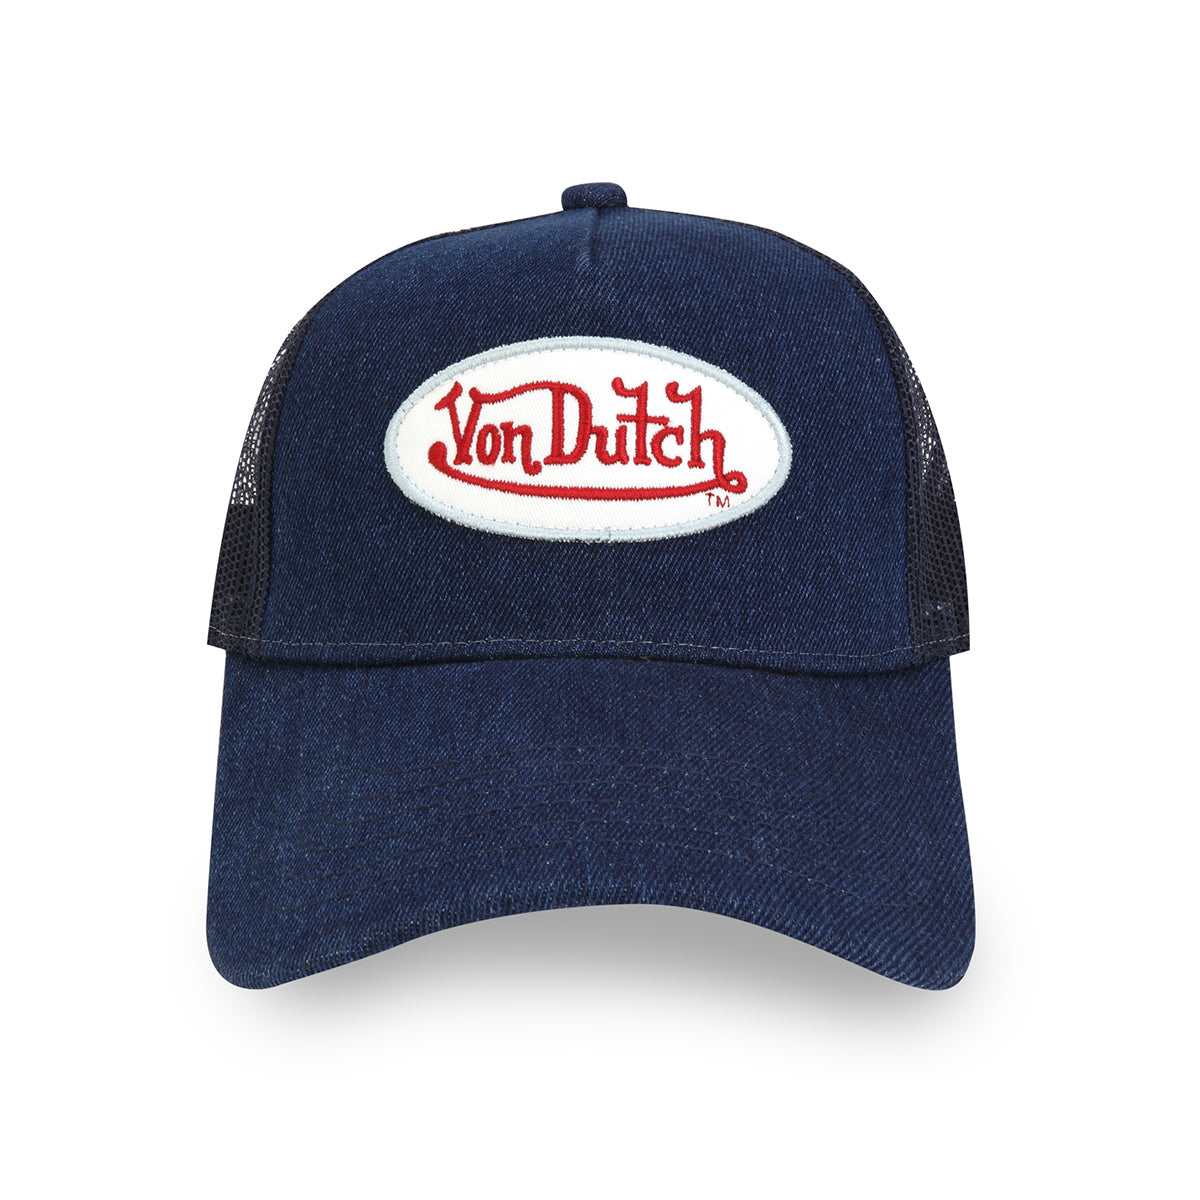 Von Dutch - Navy Denim Logo – With (Navy) Octane Trucker Hat